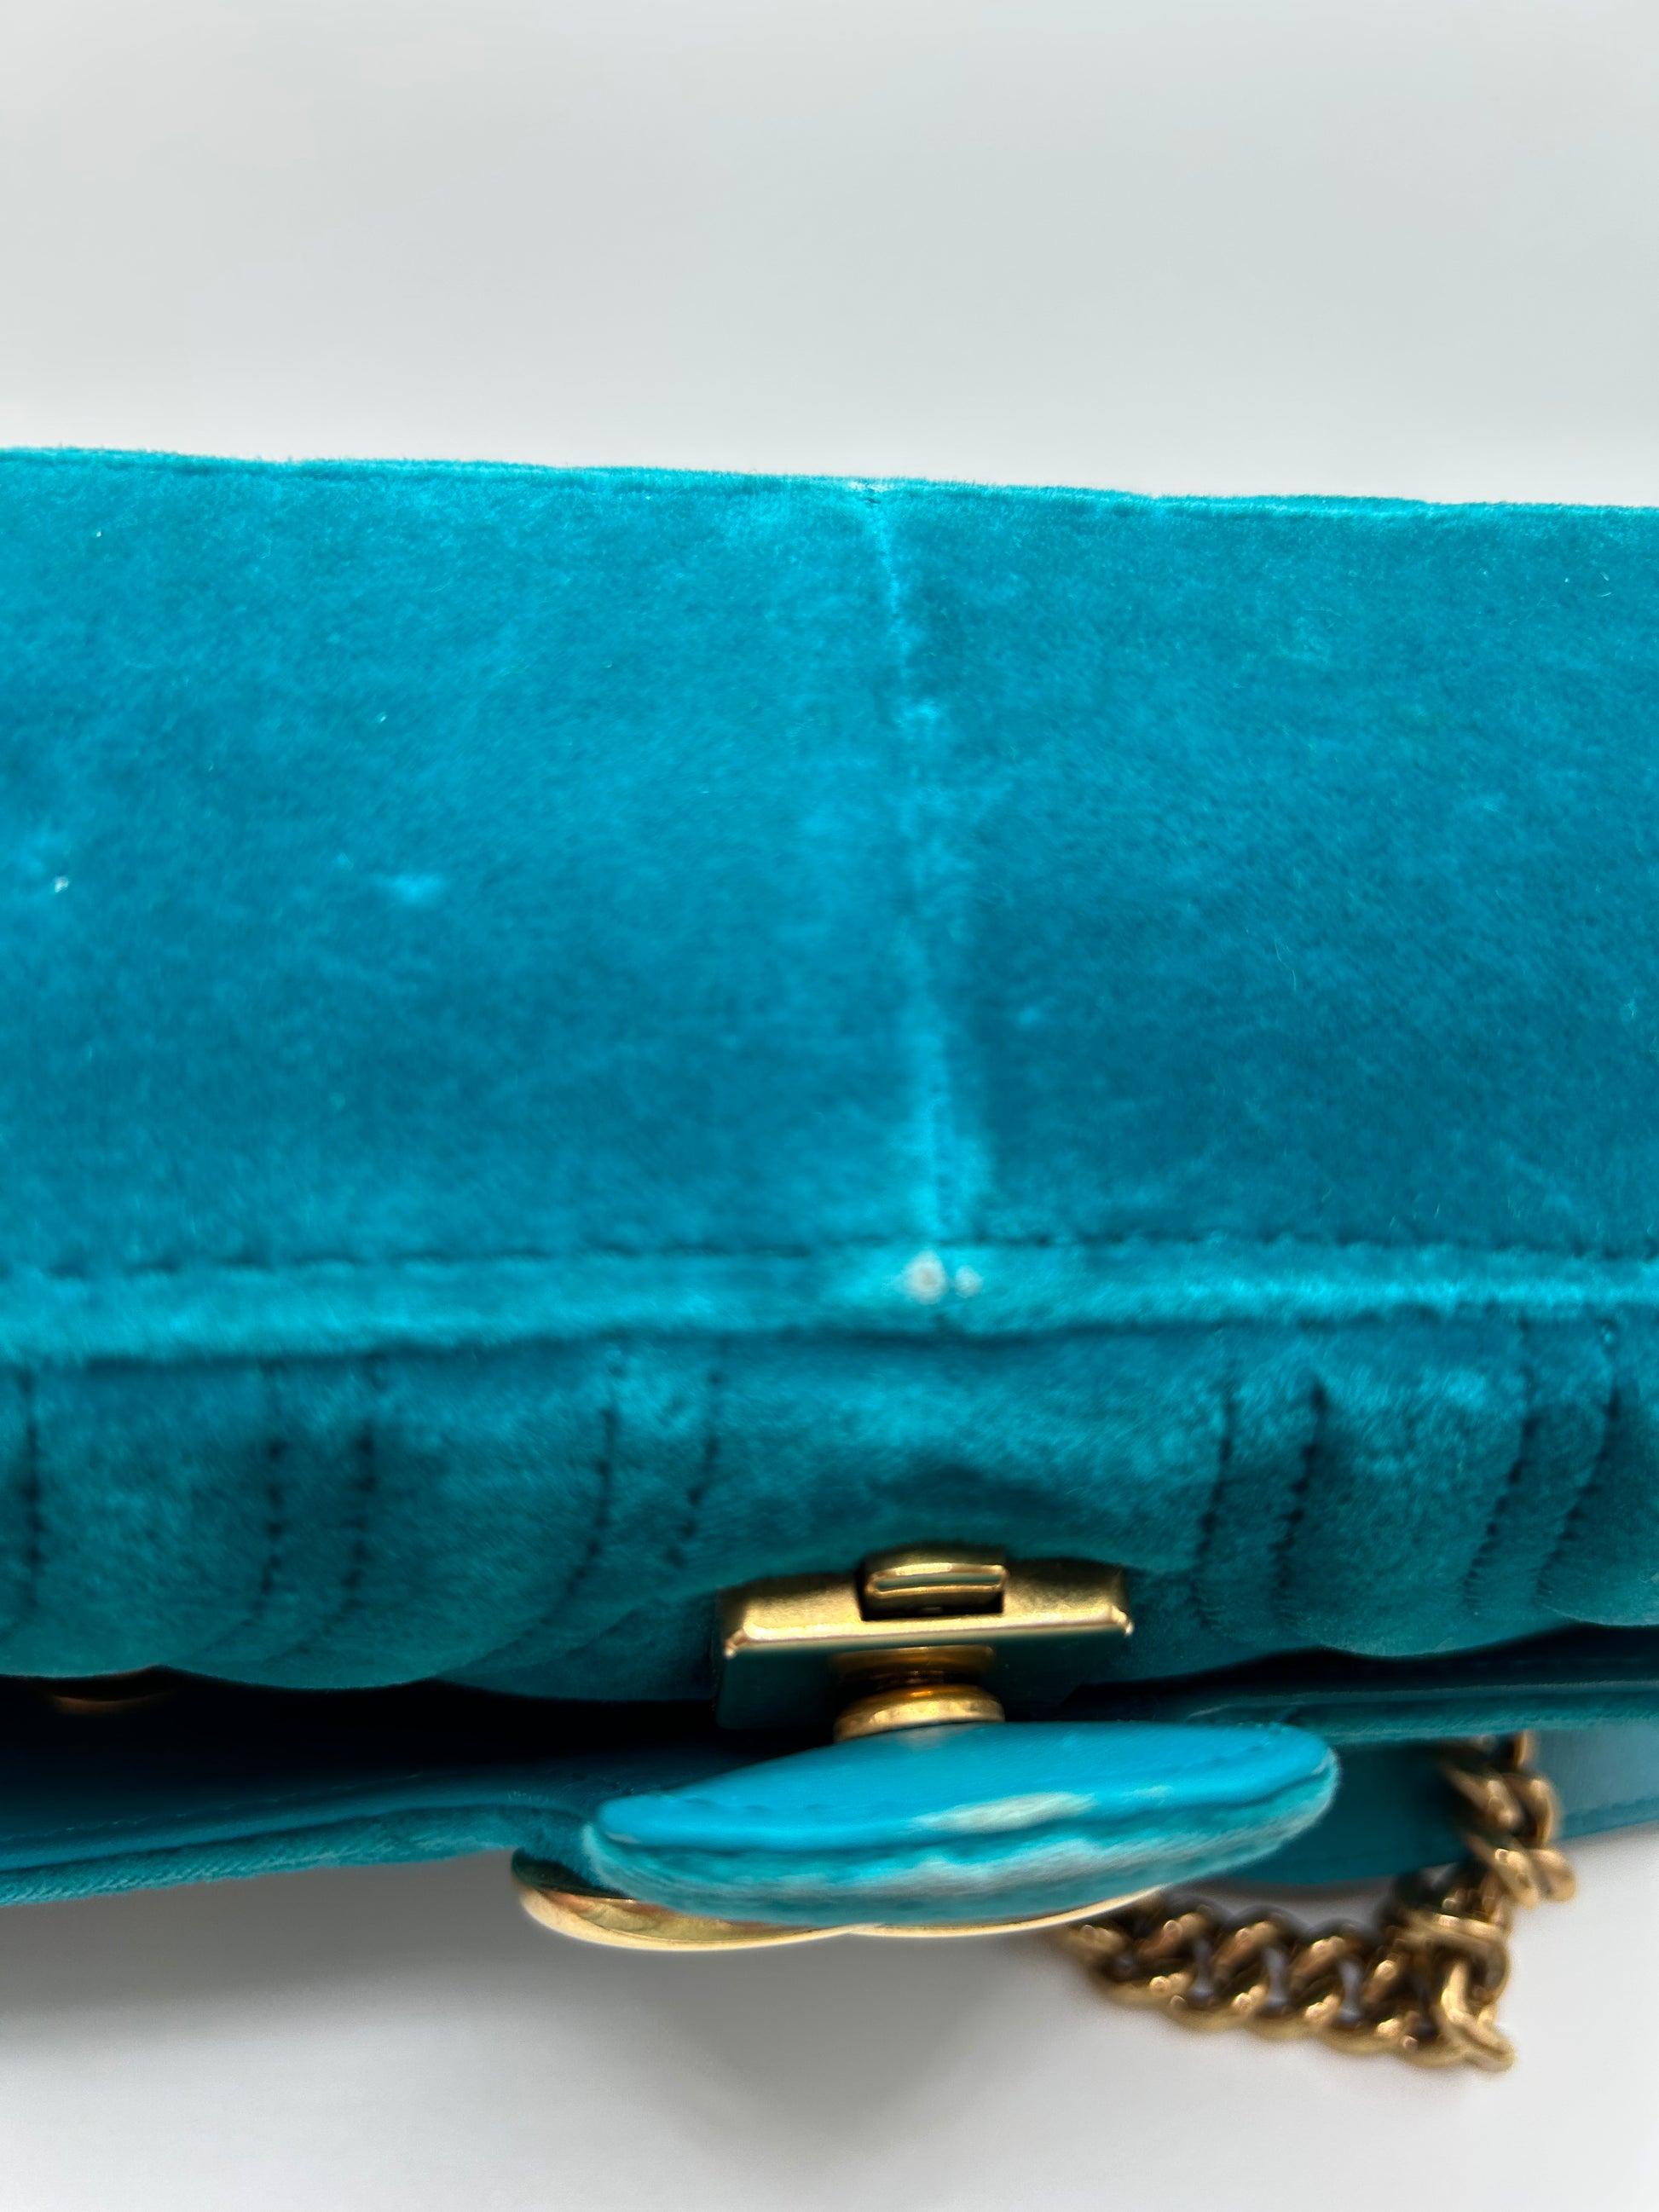 Marmont Velvet Clutch Bag Gucci Turquoise In Velvet